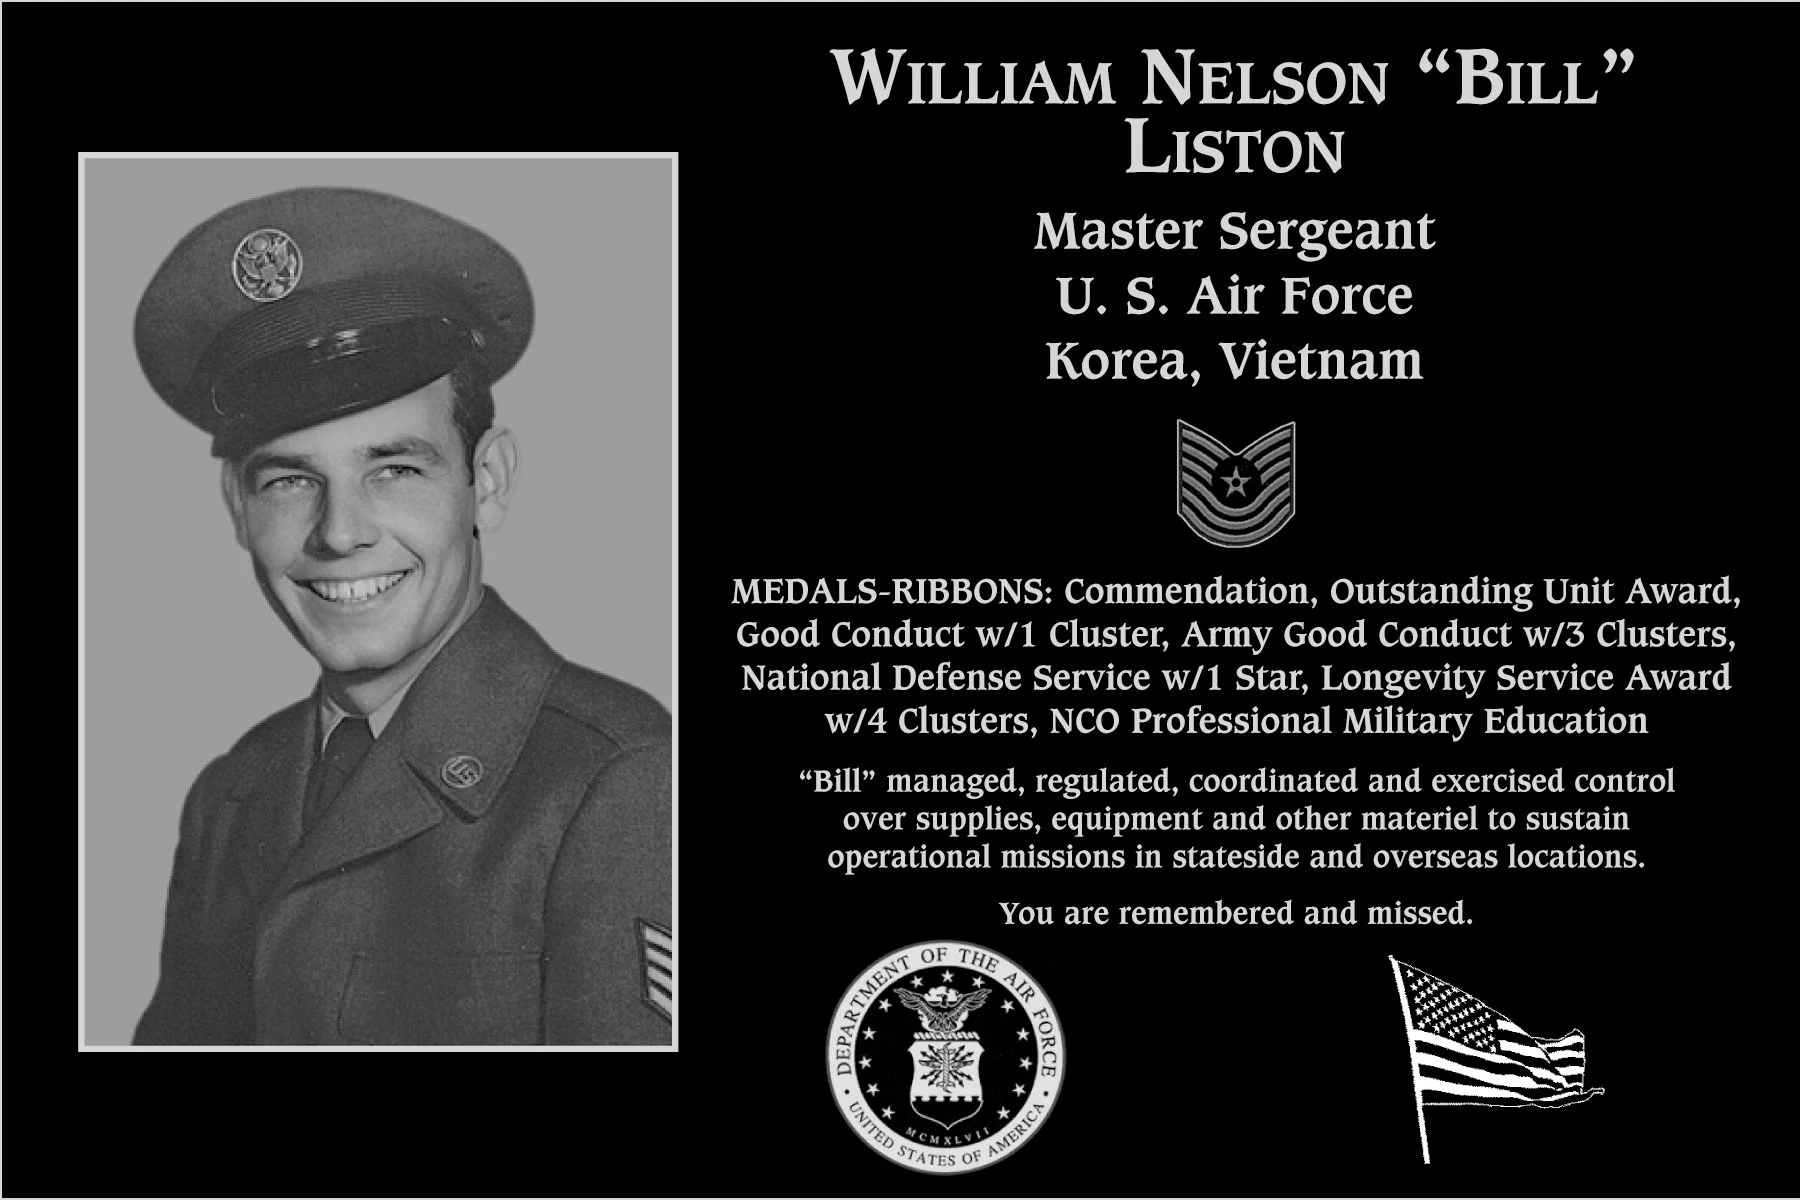 William Nelson “Bill” Liston